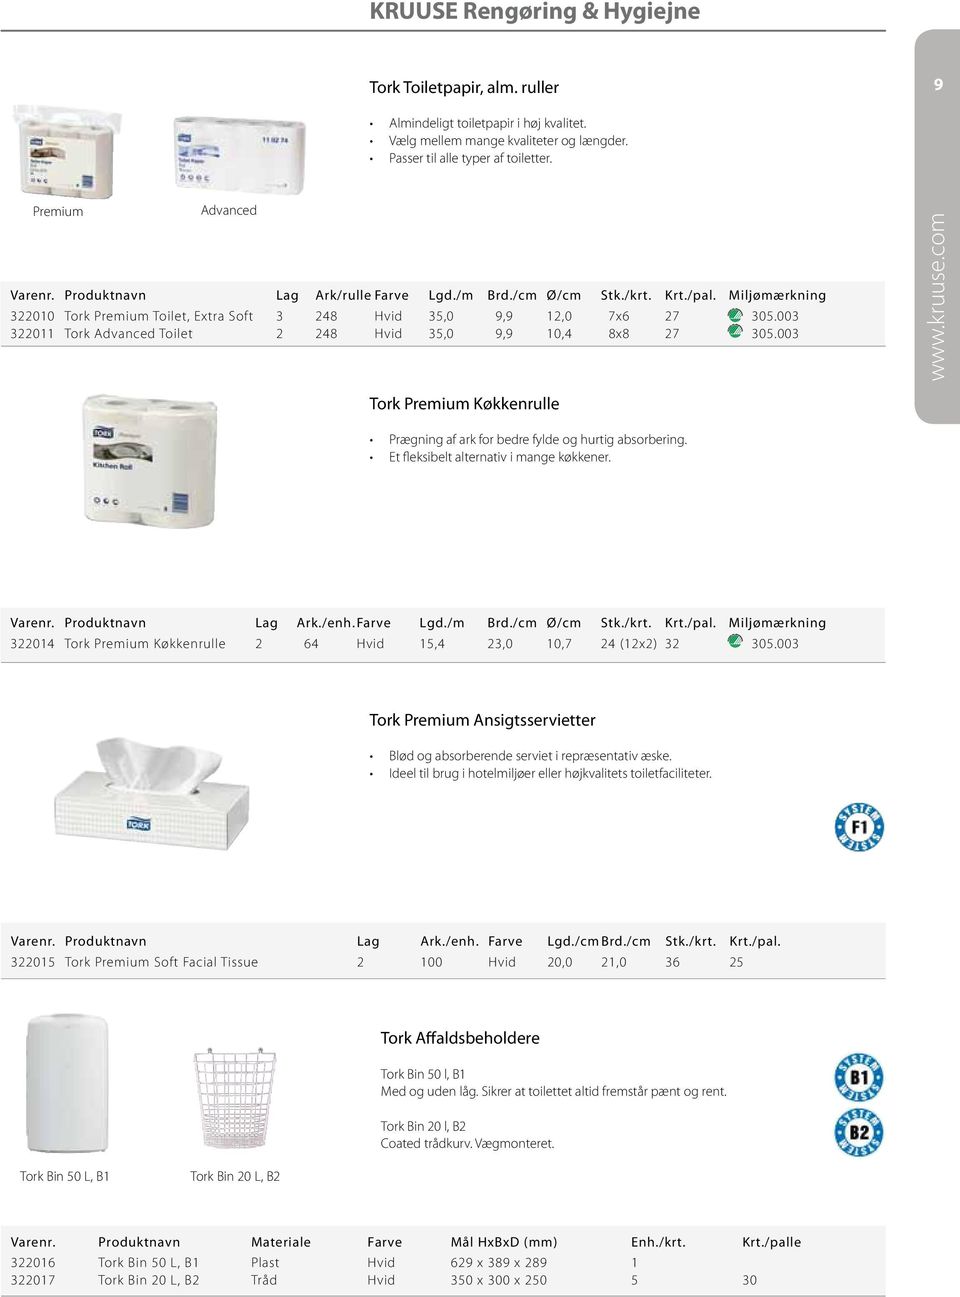 003 322011 Tork Advanced Toilet 2 248 Hvid 35,0 9,9 10,4 8x8 27 305.003 Tork Premium Køkkenrulle Prægning af ark for bedre fylde og hurtig absorbering. Et fleksibelt alternativ i mange køkkener.